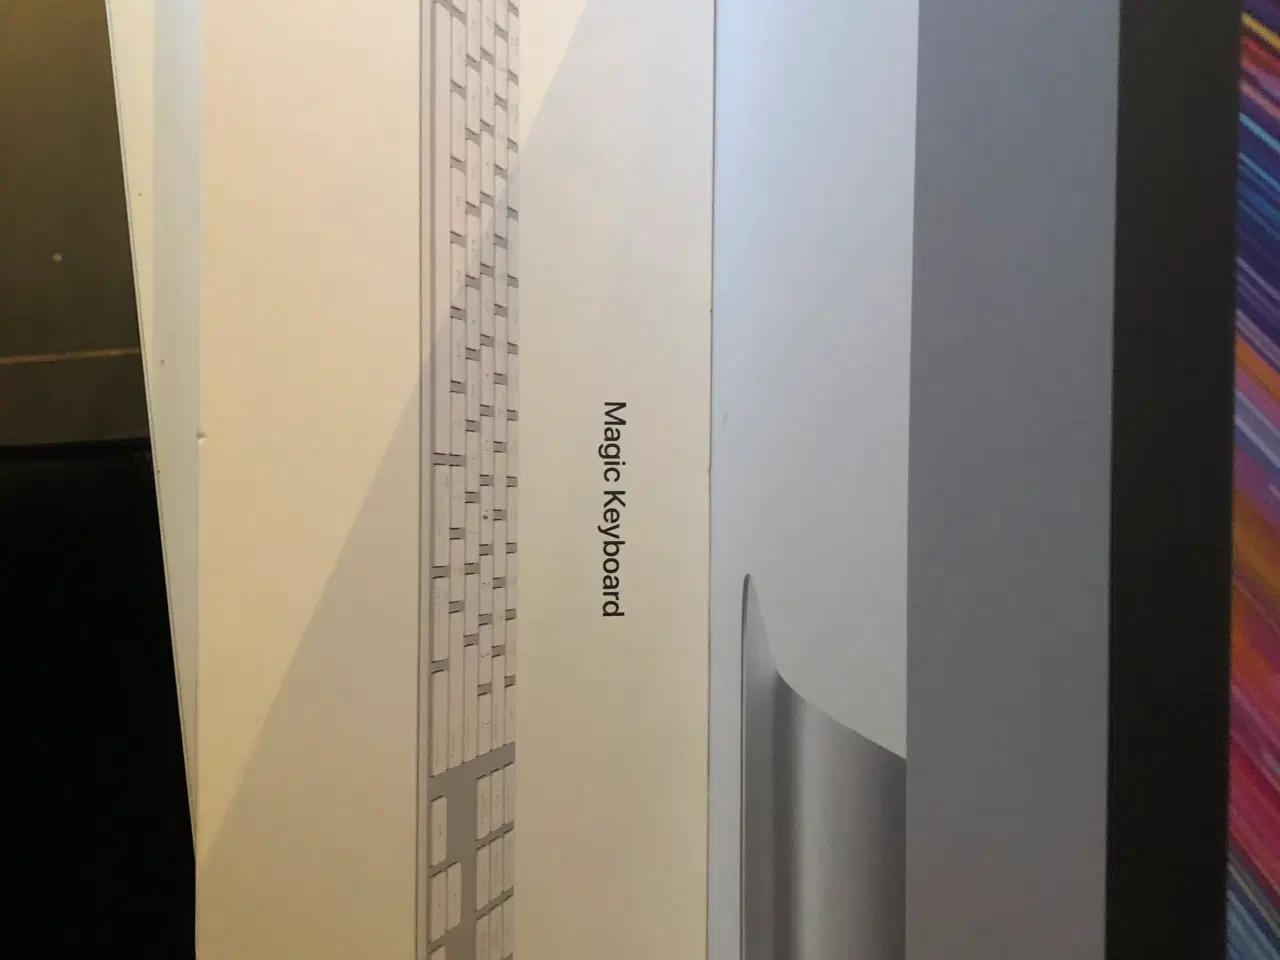 Billede 2 - iMac fra 2019